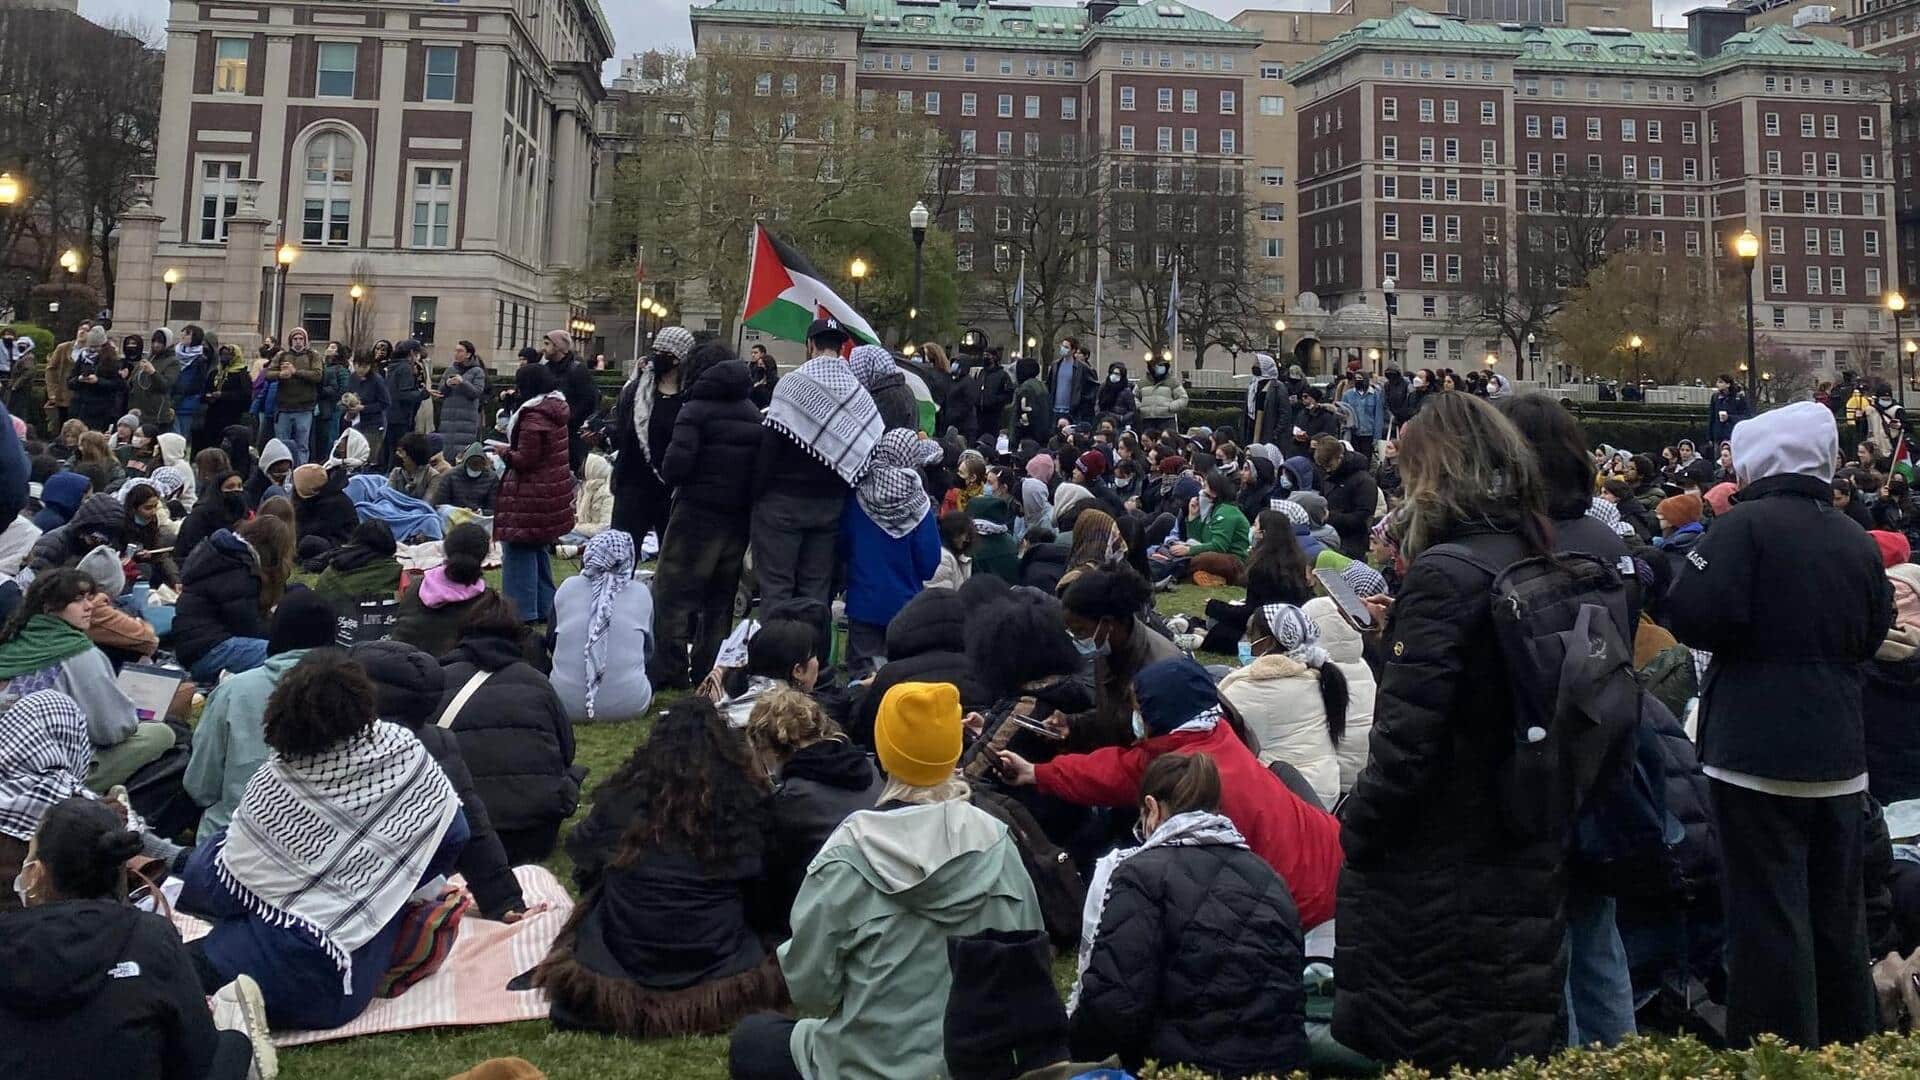 अमेरिका: कोलंबिया विश्वविद्यालय में फिलिस्तीन के समर्थन में प्रदर्शन के लिए लगभग 100 छात्र गिरफ्तार